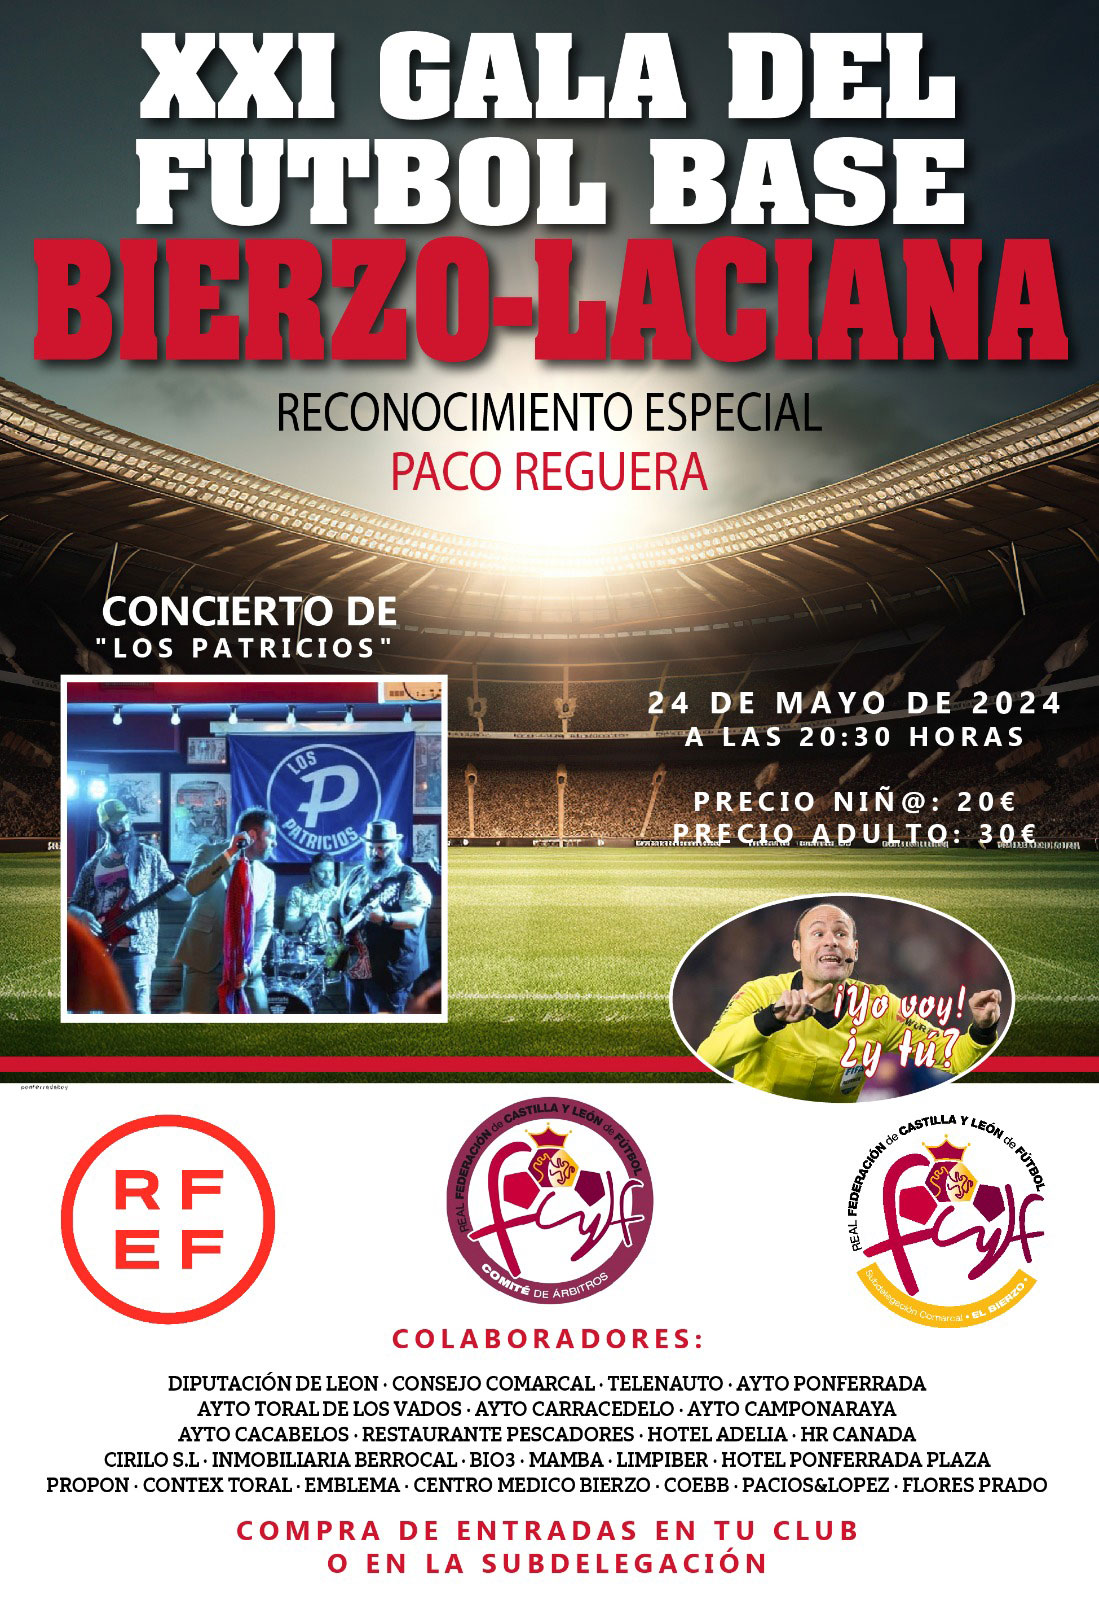 La XXI Gala del fútbol base del Bierzo- Laciana tendrá un reconocimiento especial a Paco Reguera 16